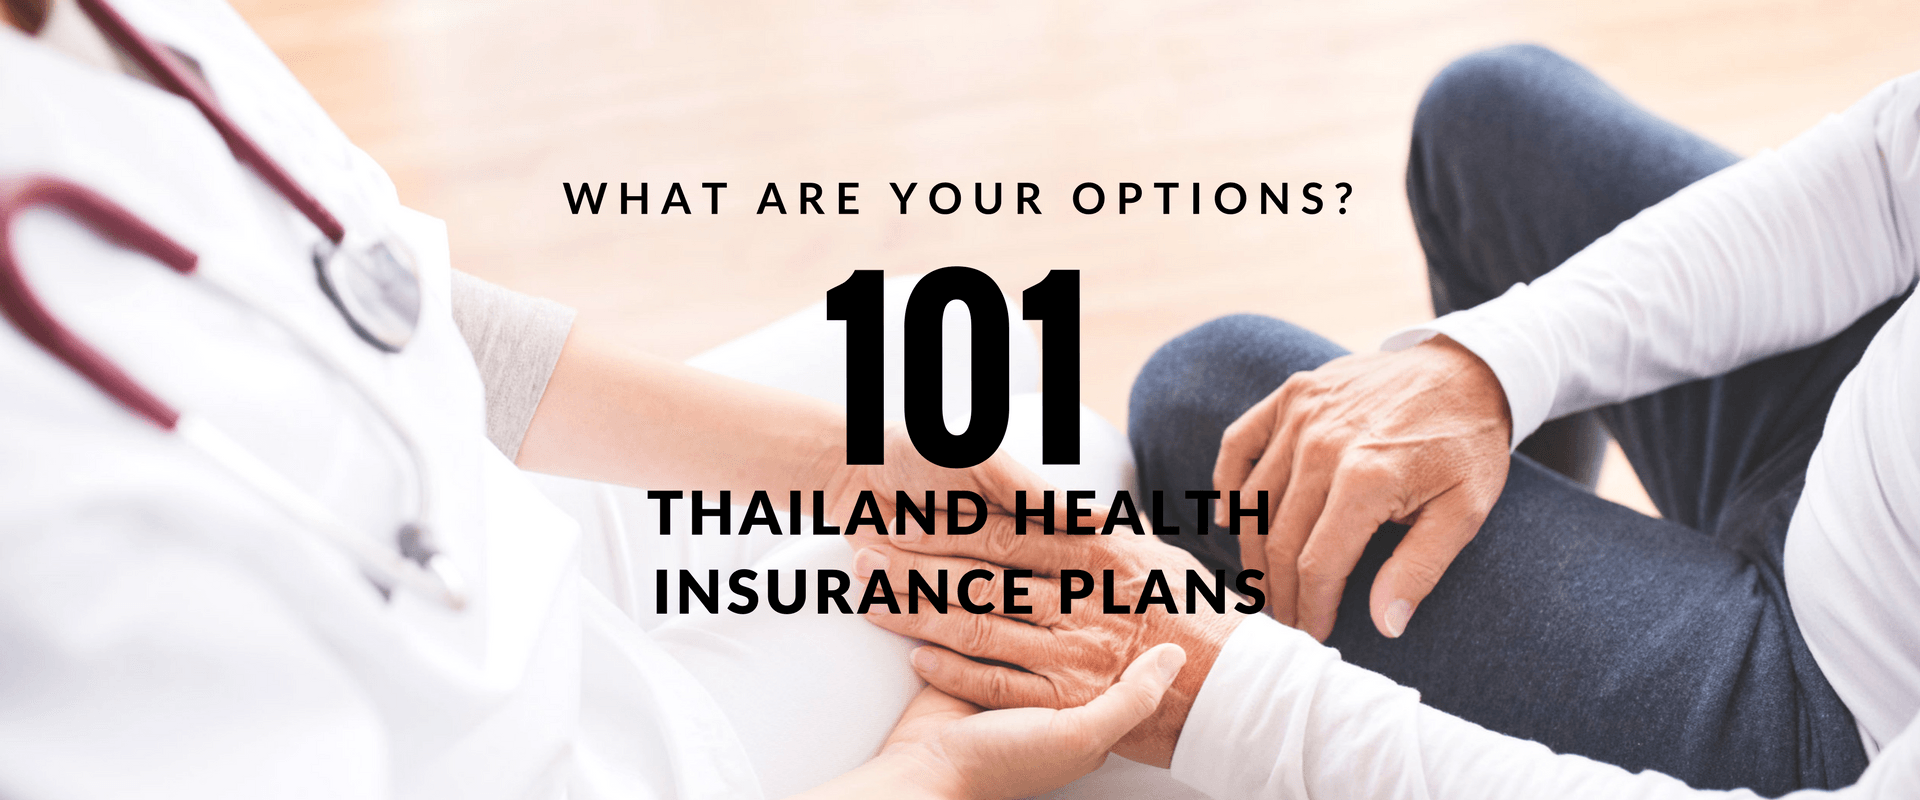 , ประกันสุขภาพในประเทศไทย 101: ทางเลือกของคุณมีอะไรบ้าง